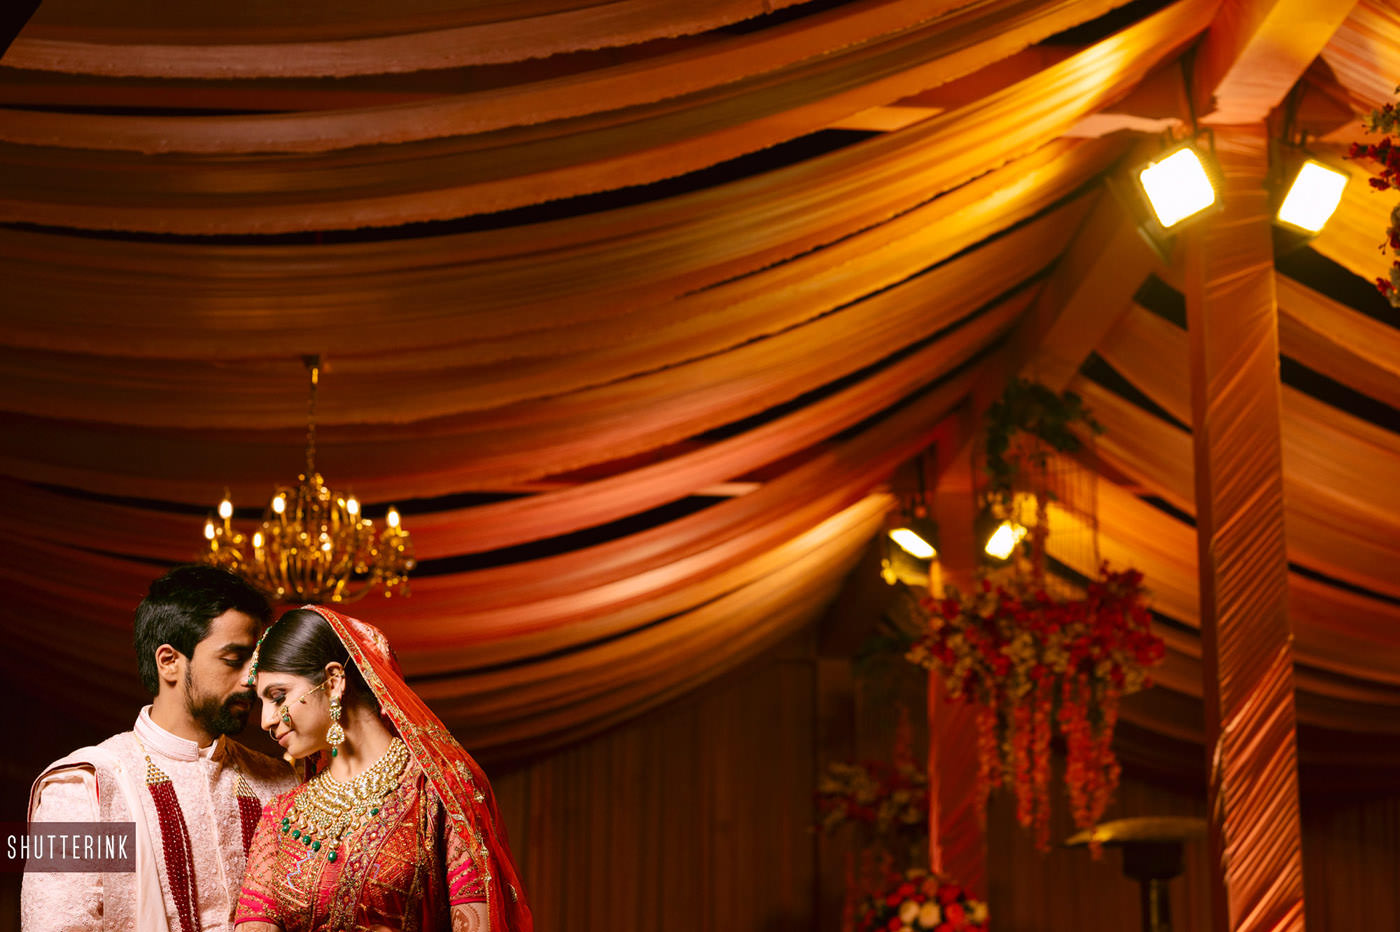 Destination wedding in Agra